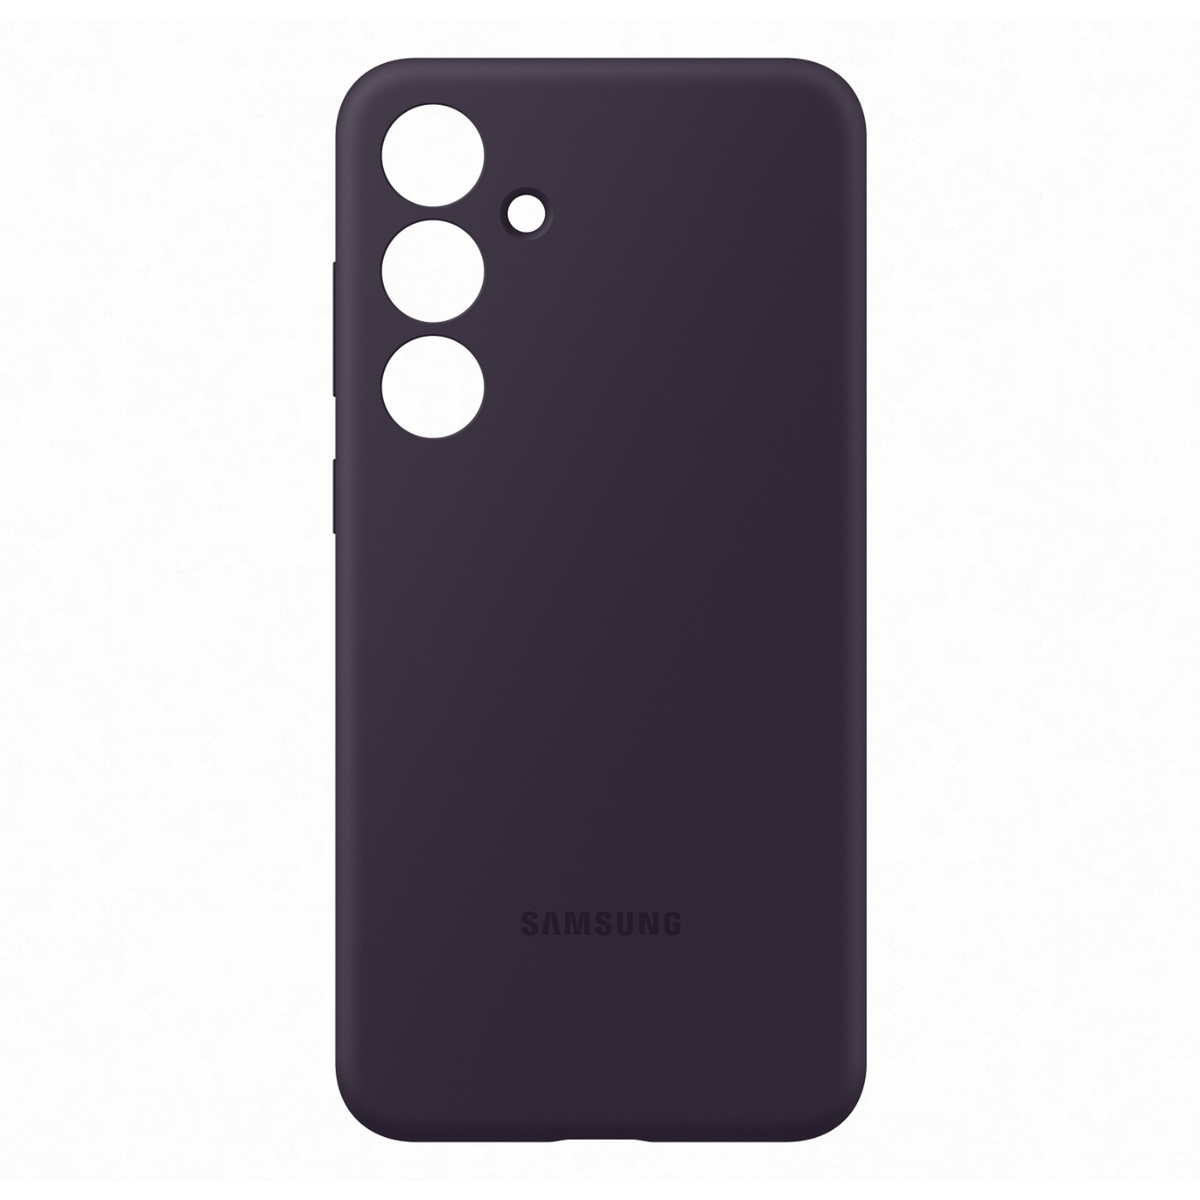 Samsung Galaxy S24+ Silicone Case, Dark Violet, EF-PS926TEEGWW